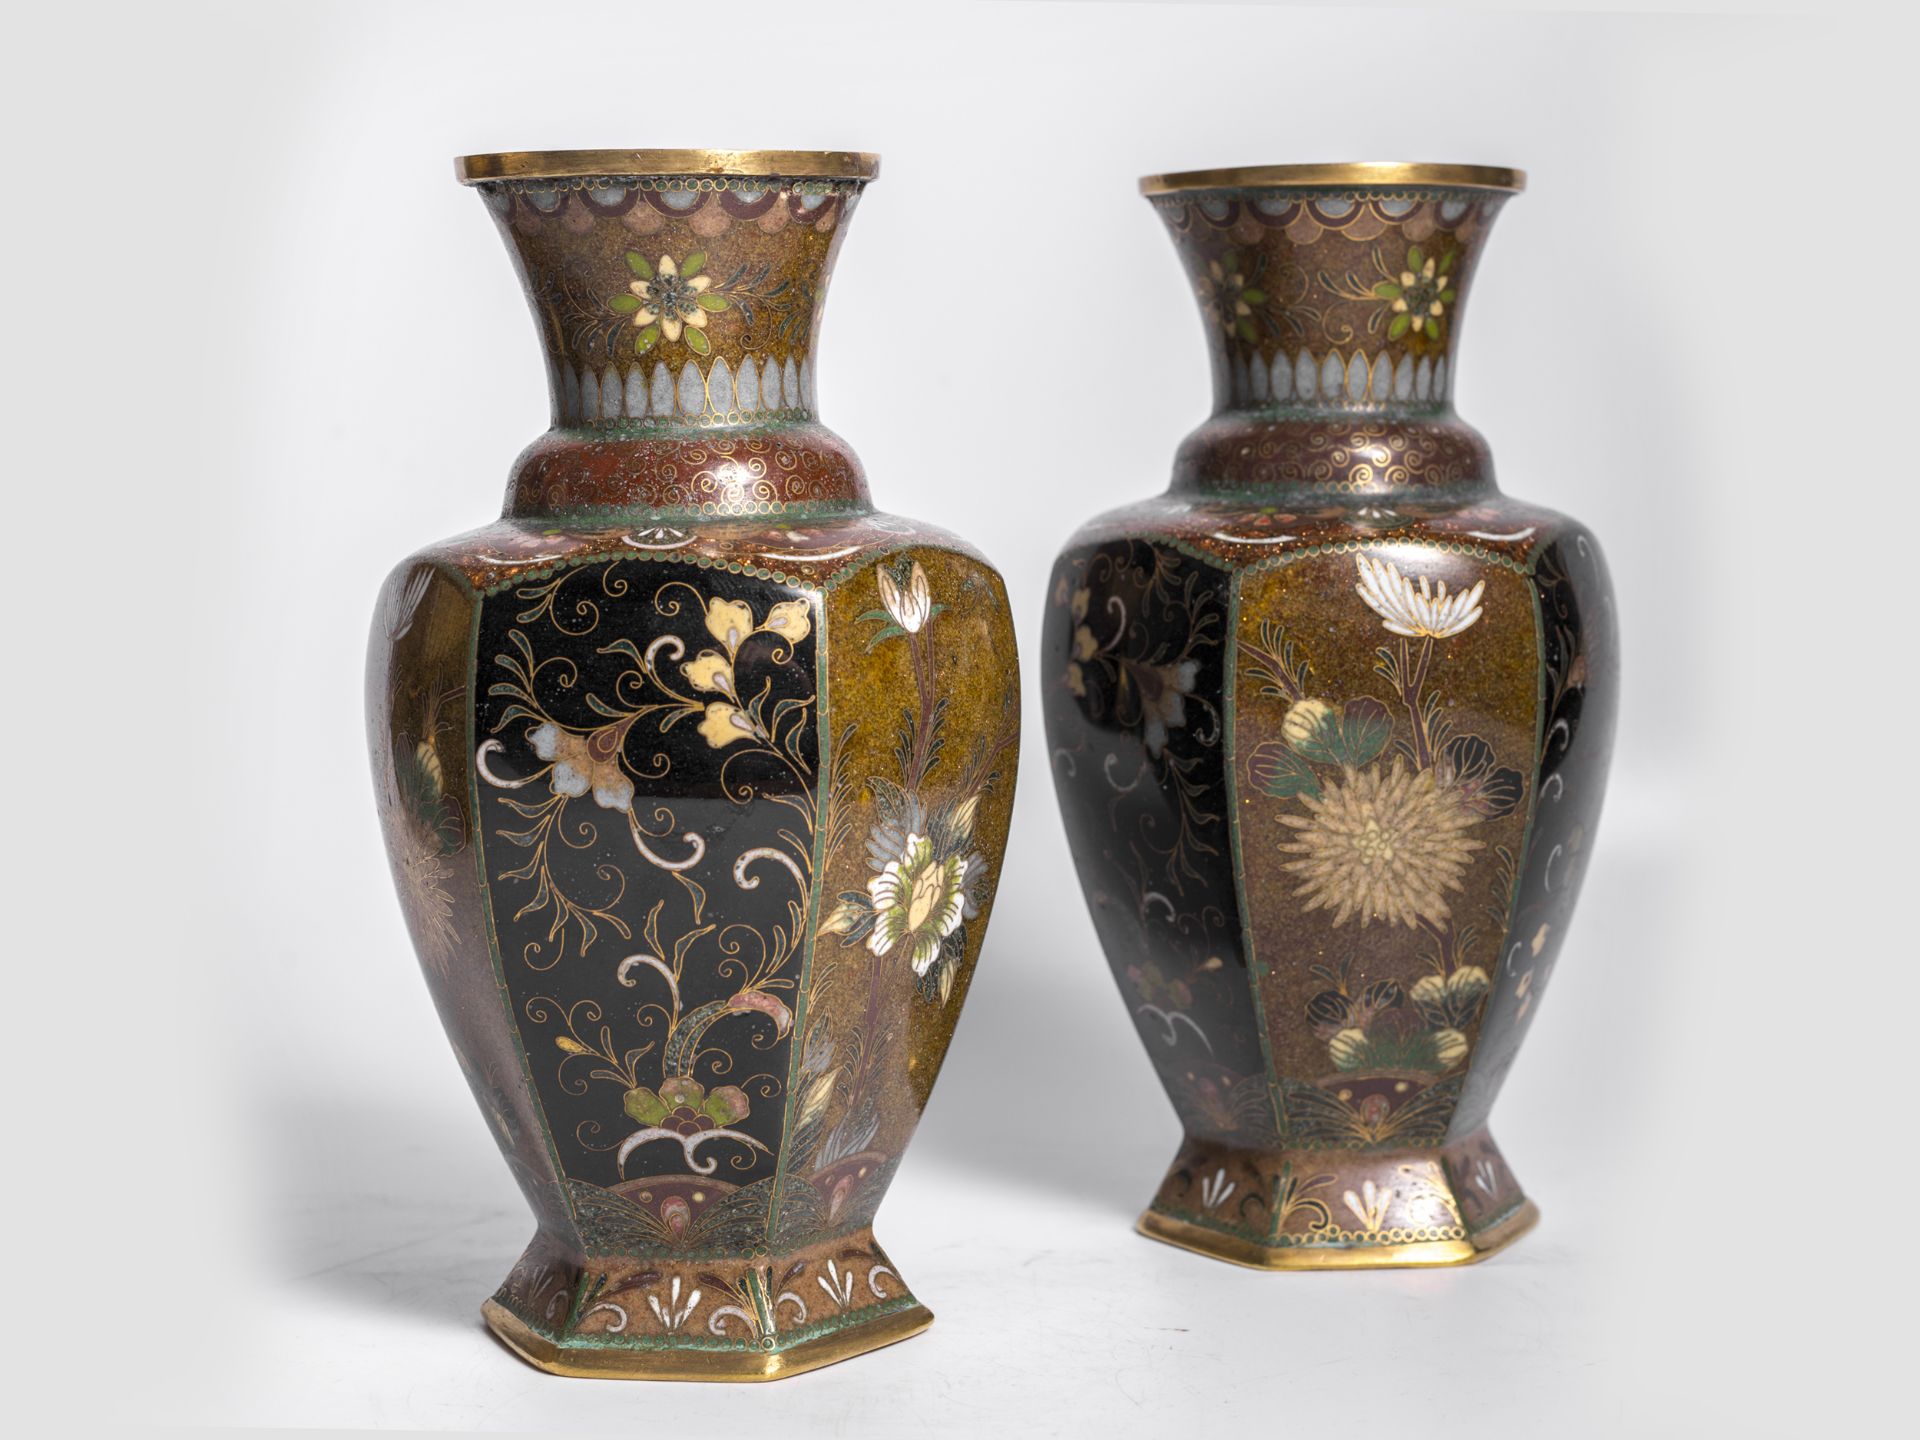 Paar Cloisonne Vasen, China, Qing Dynastie 1644 – 1911 - Bild 3 aus 5